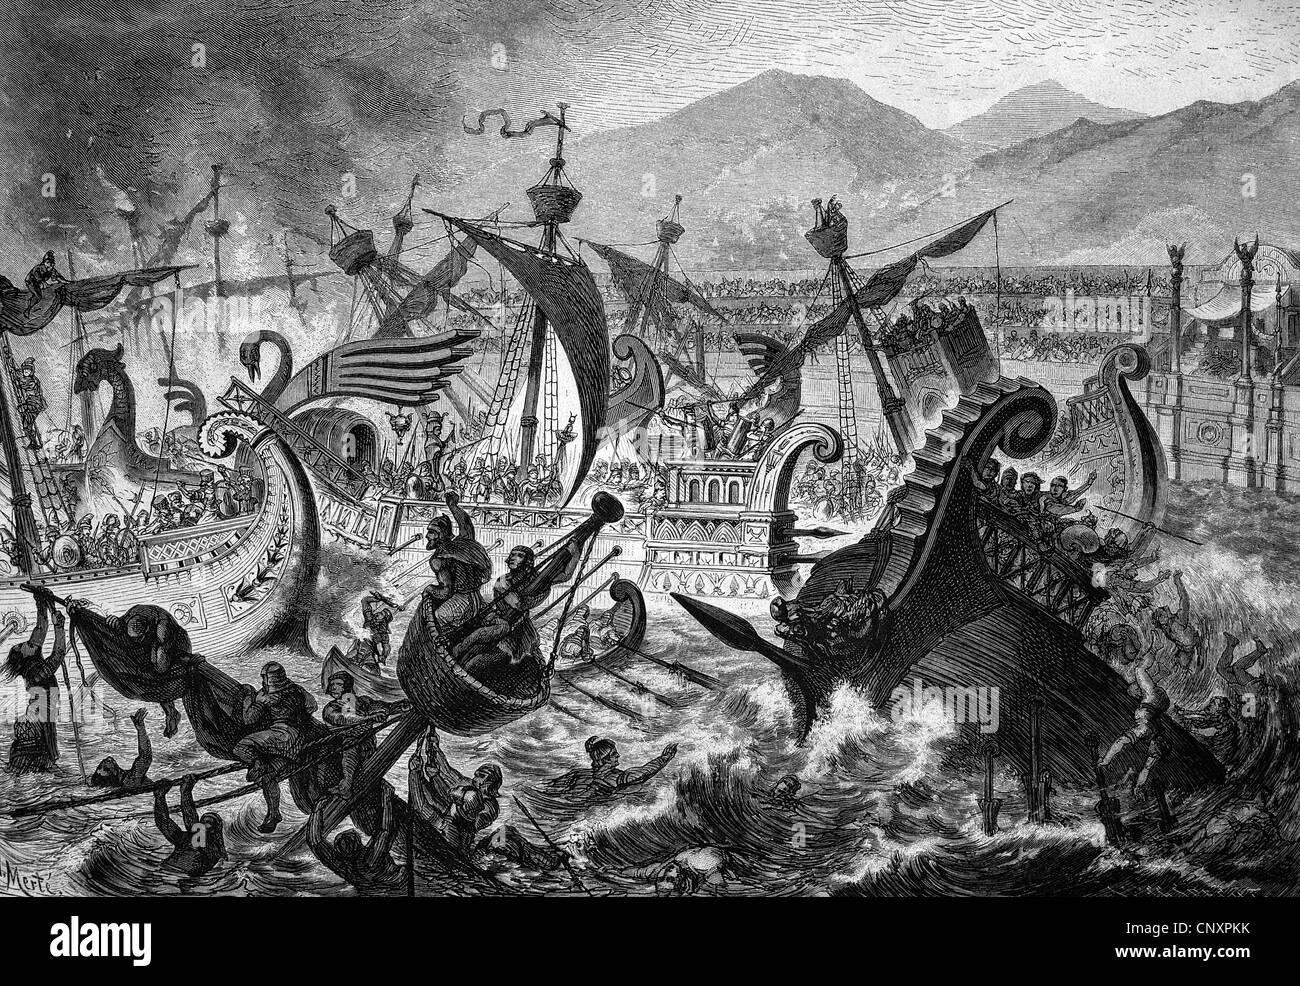 Bataille navale, organisé comme une exposition lutte pour le peuple de Rome par l'empereur Claudius, gravure de 1883 historique Banque D'Images